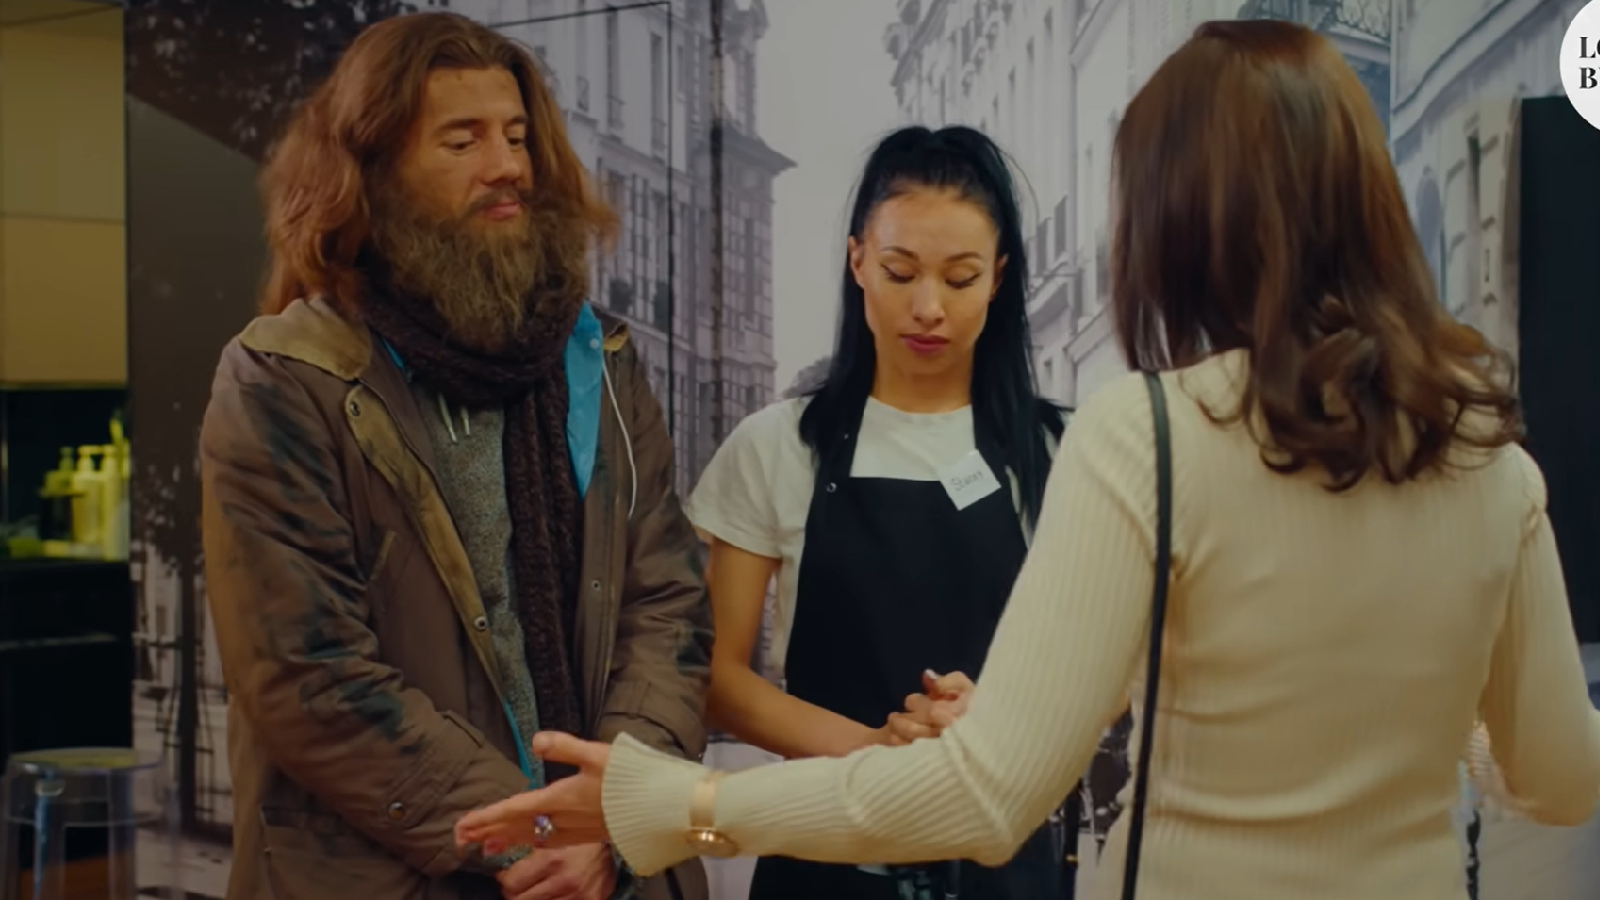 فيلم Rich girl buys homeless man مترجم بدقة HD